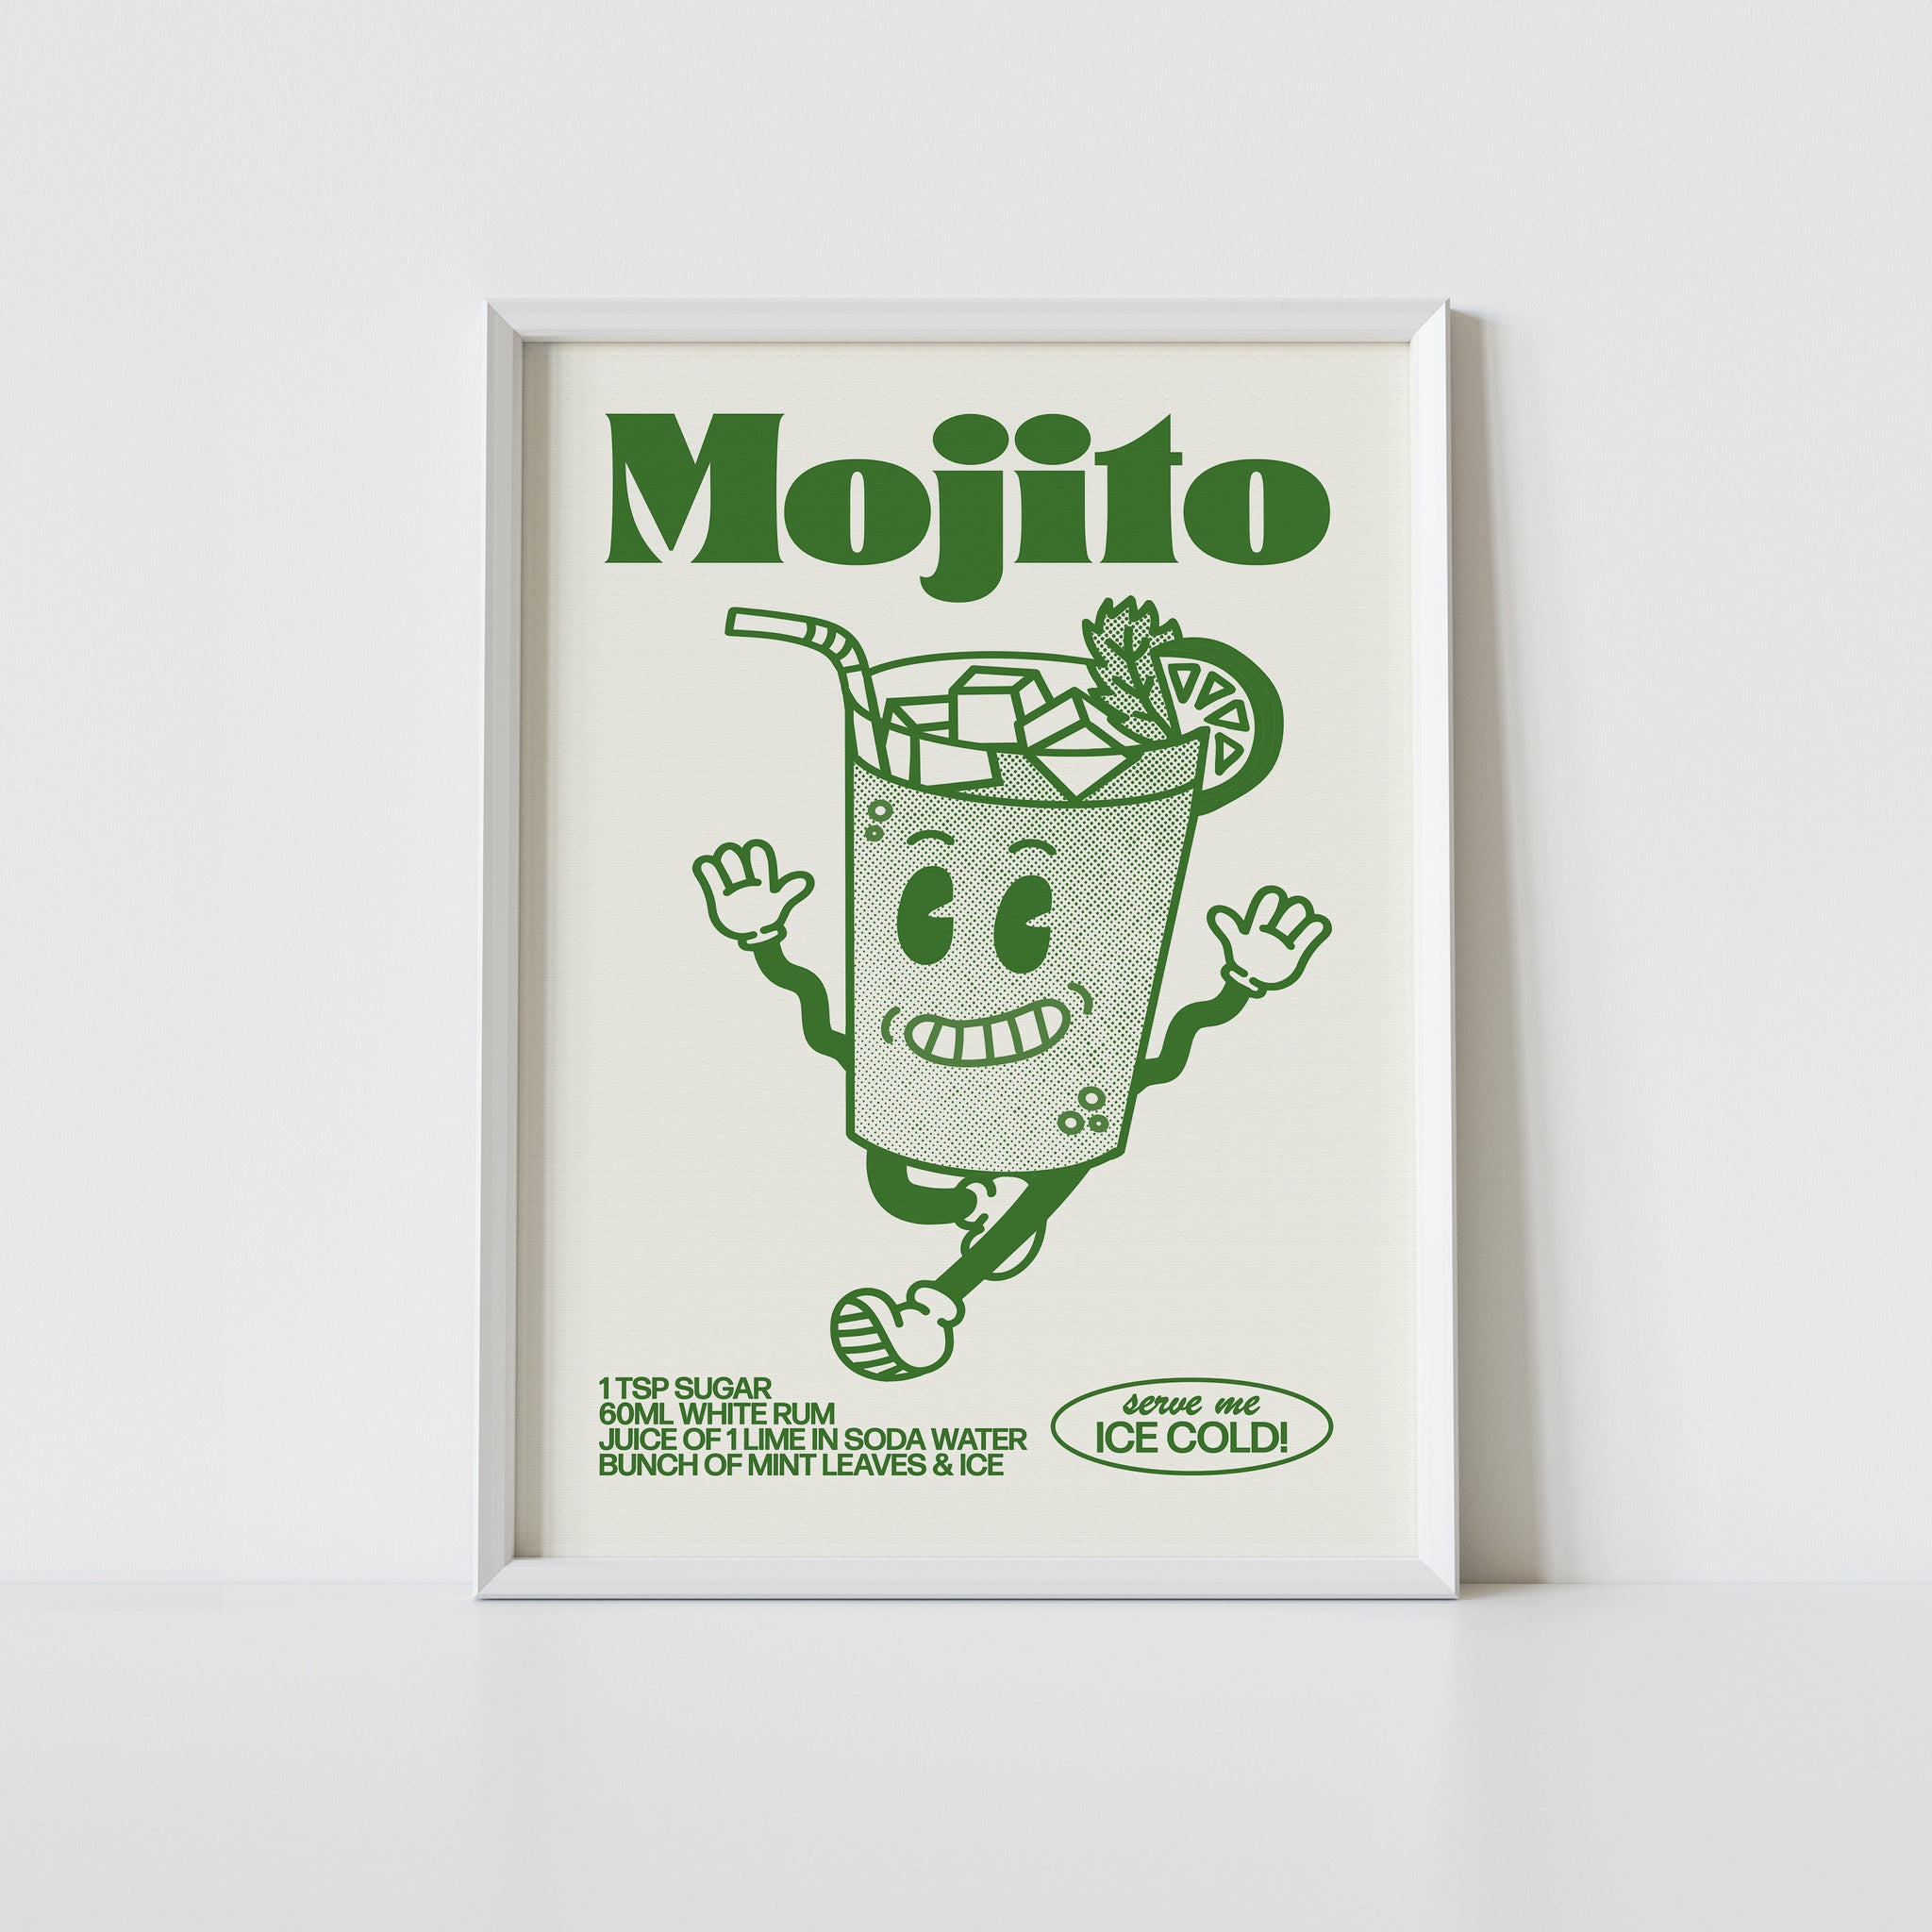 'Mojito' print